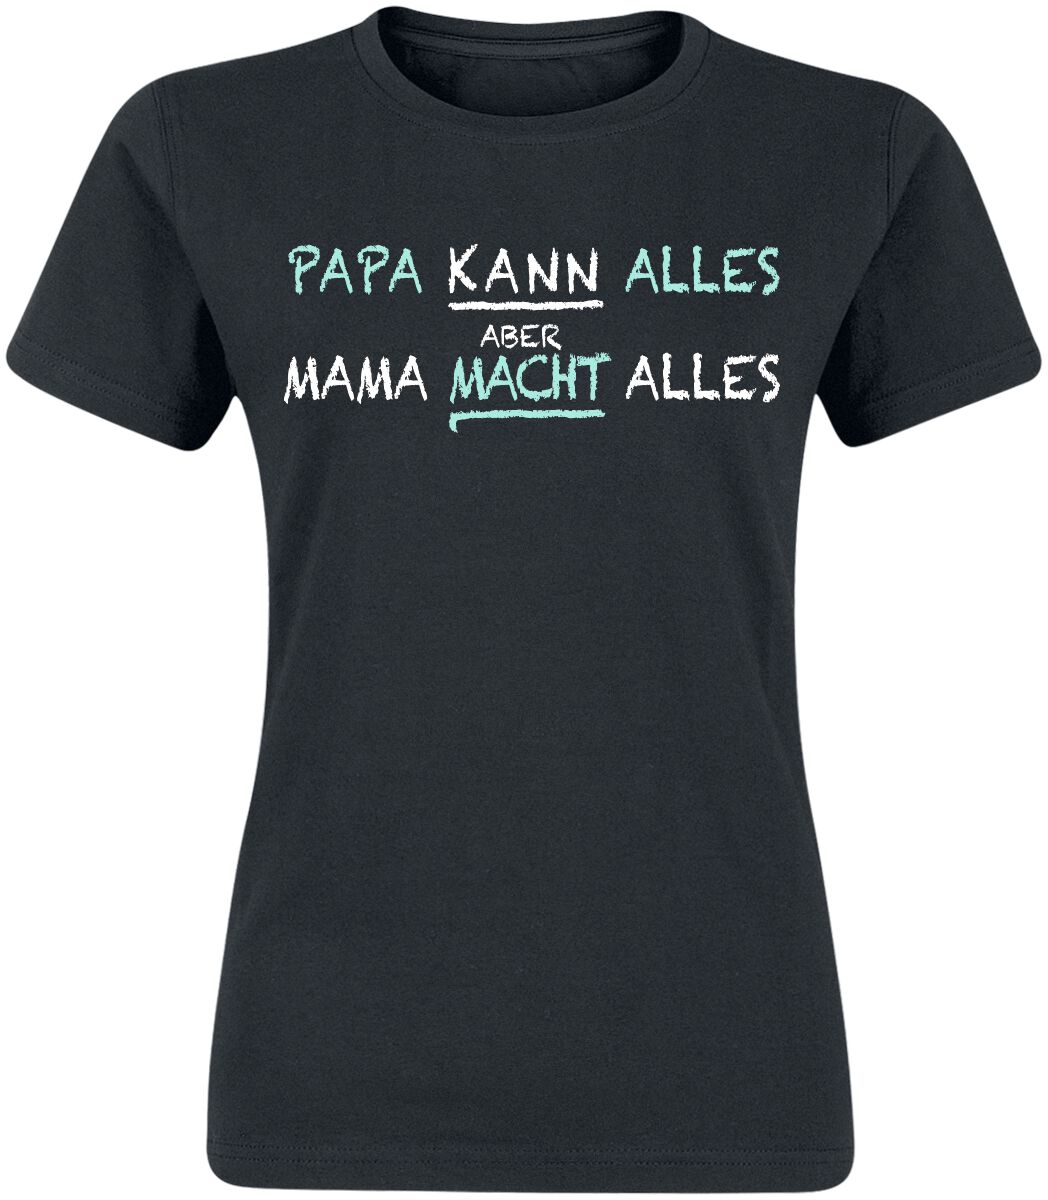 Familie & Freunde T-Shirt - Mama macht alles - S bis 3XL - für Damen - Größe XXL - schwarz